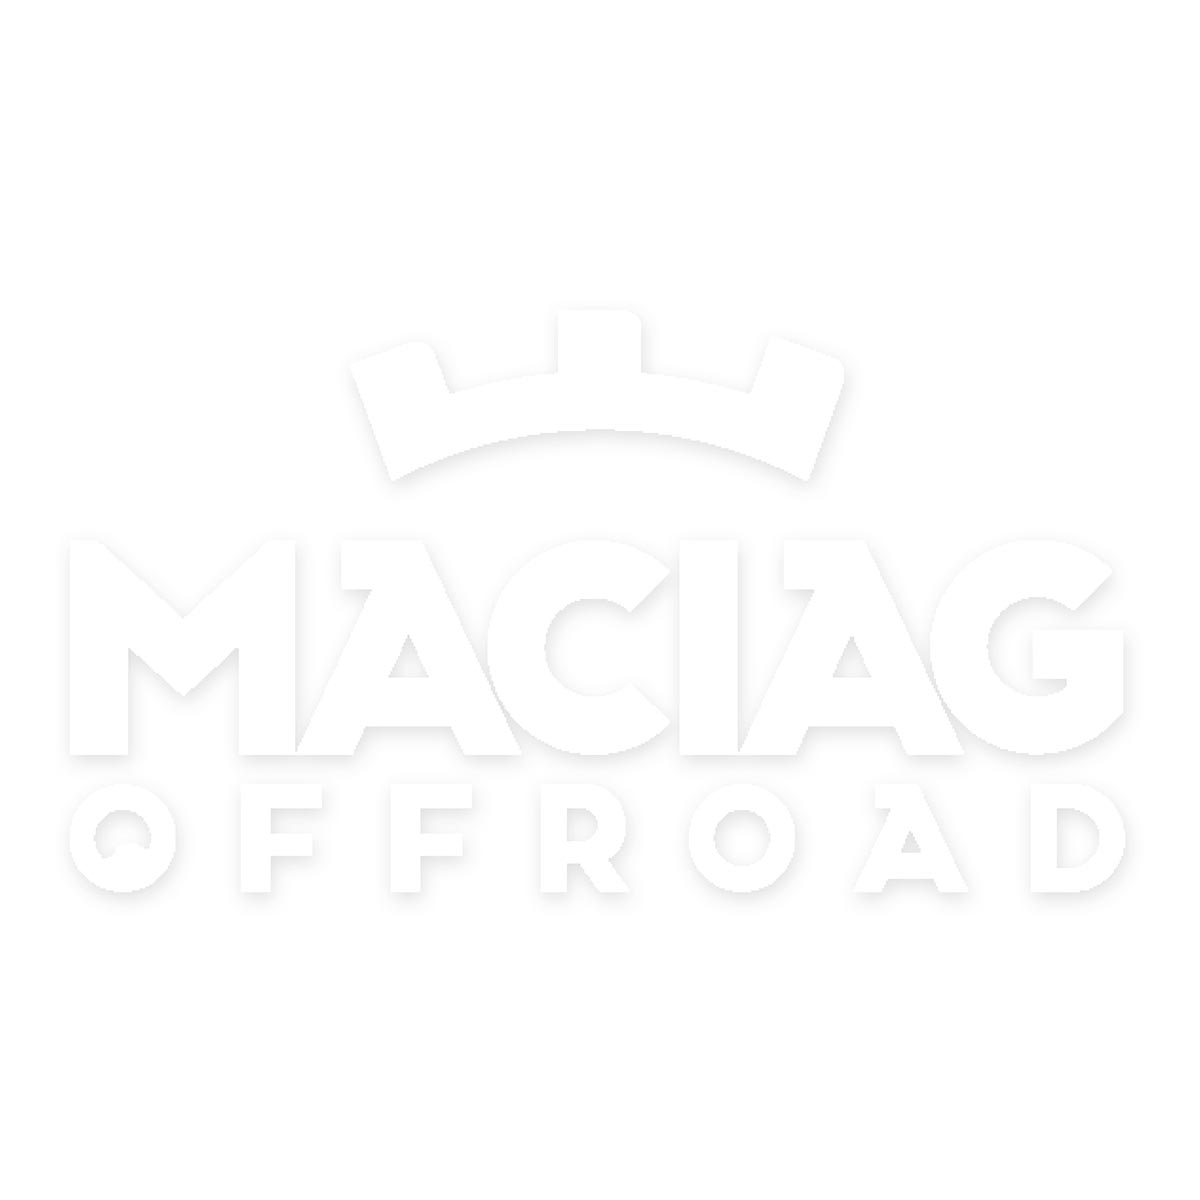 Maciag Offroad Adesivi Logo 5 x 3 cm